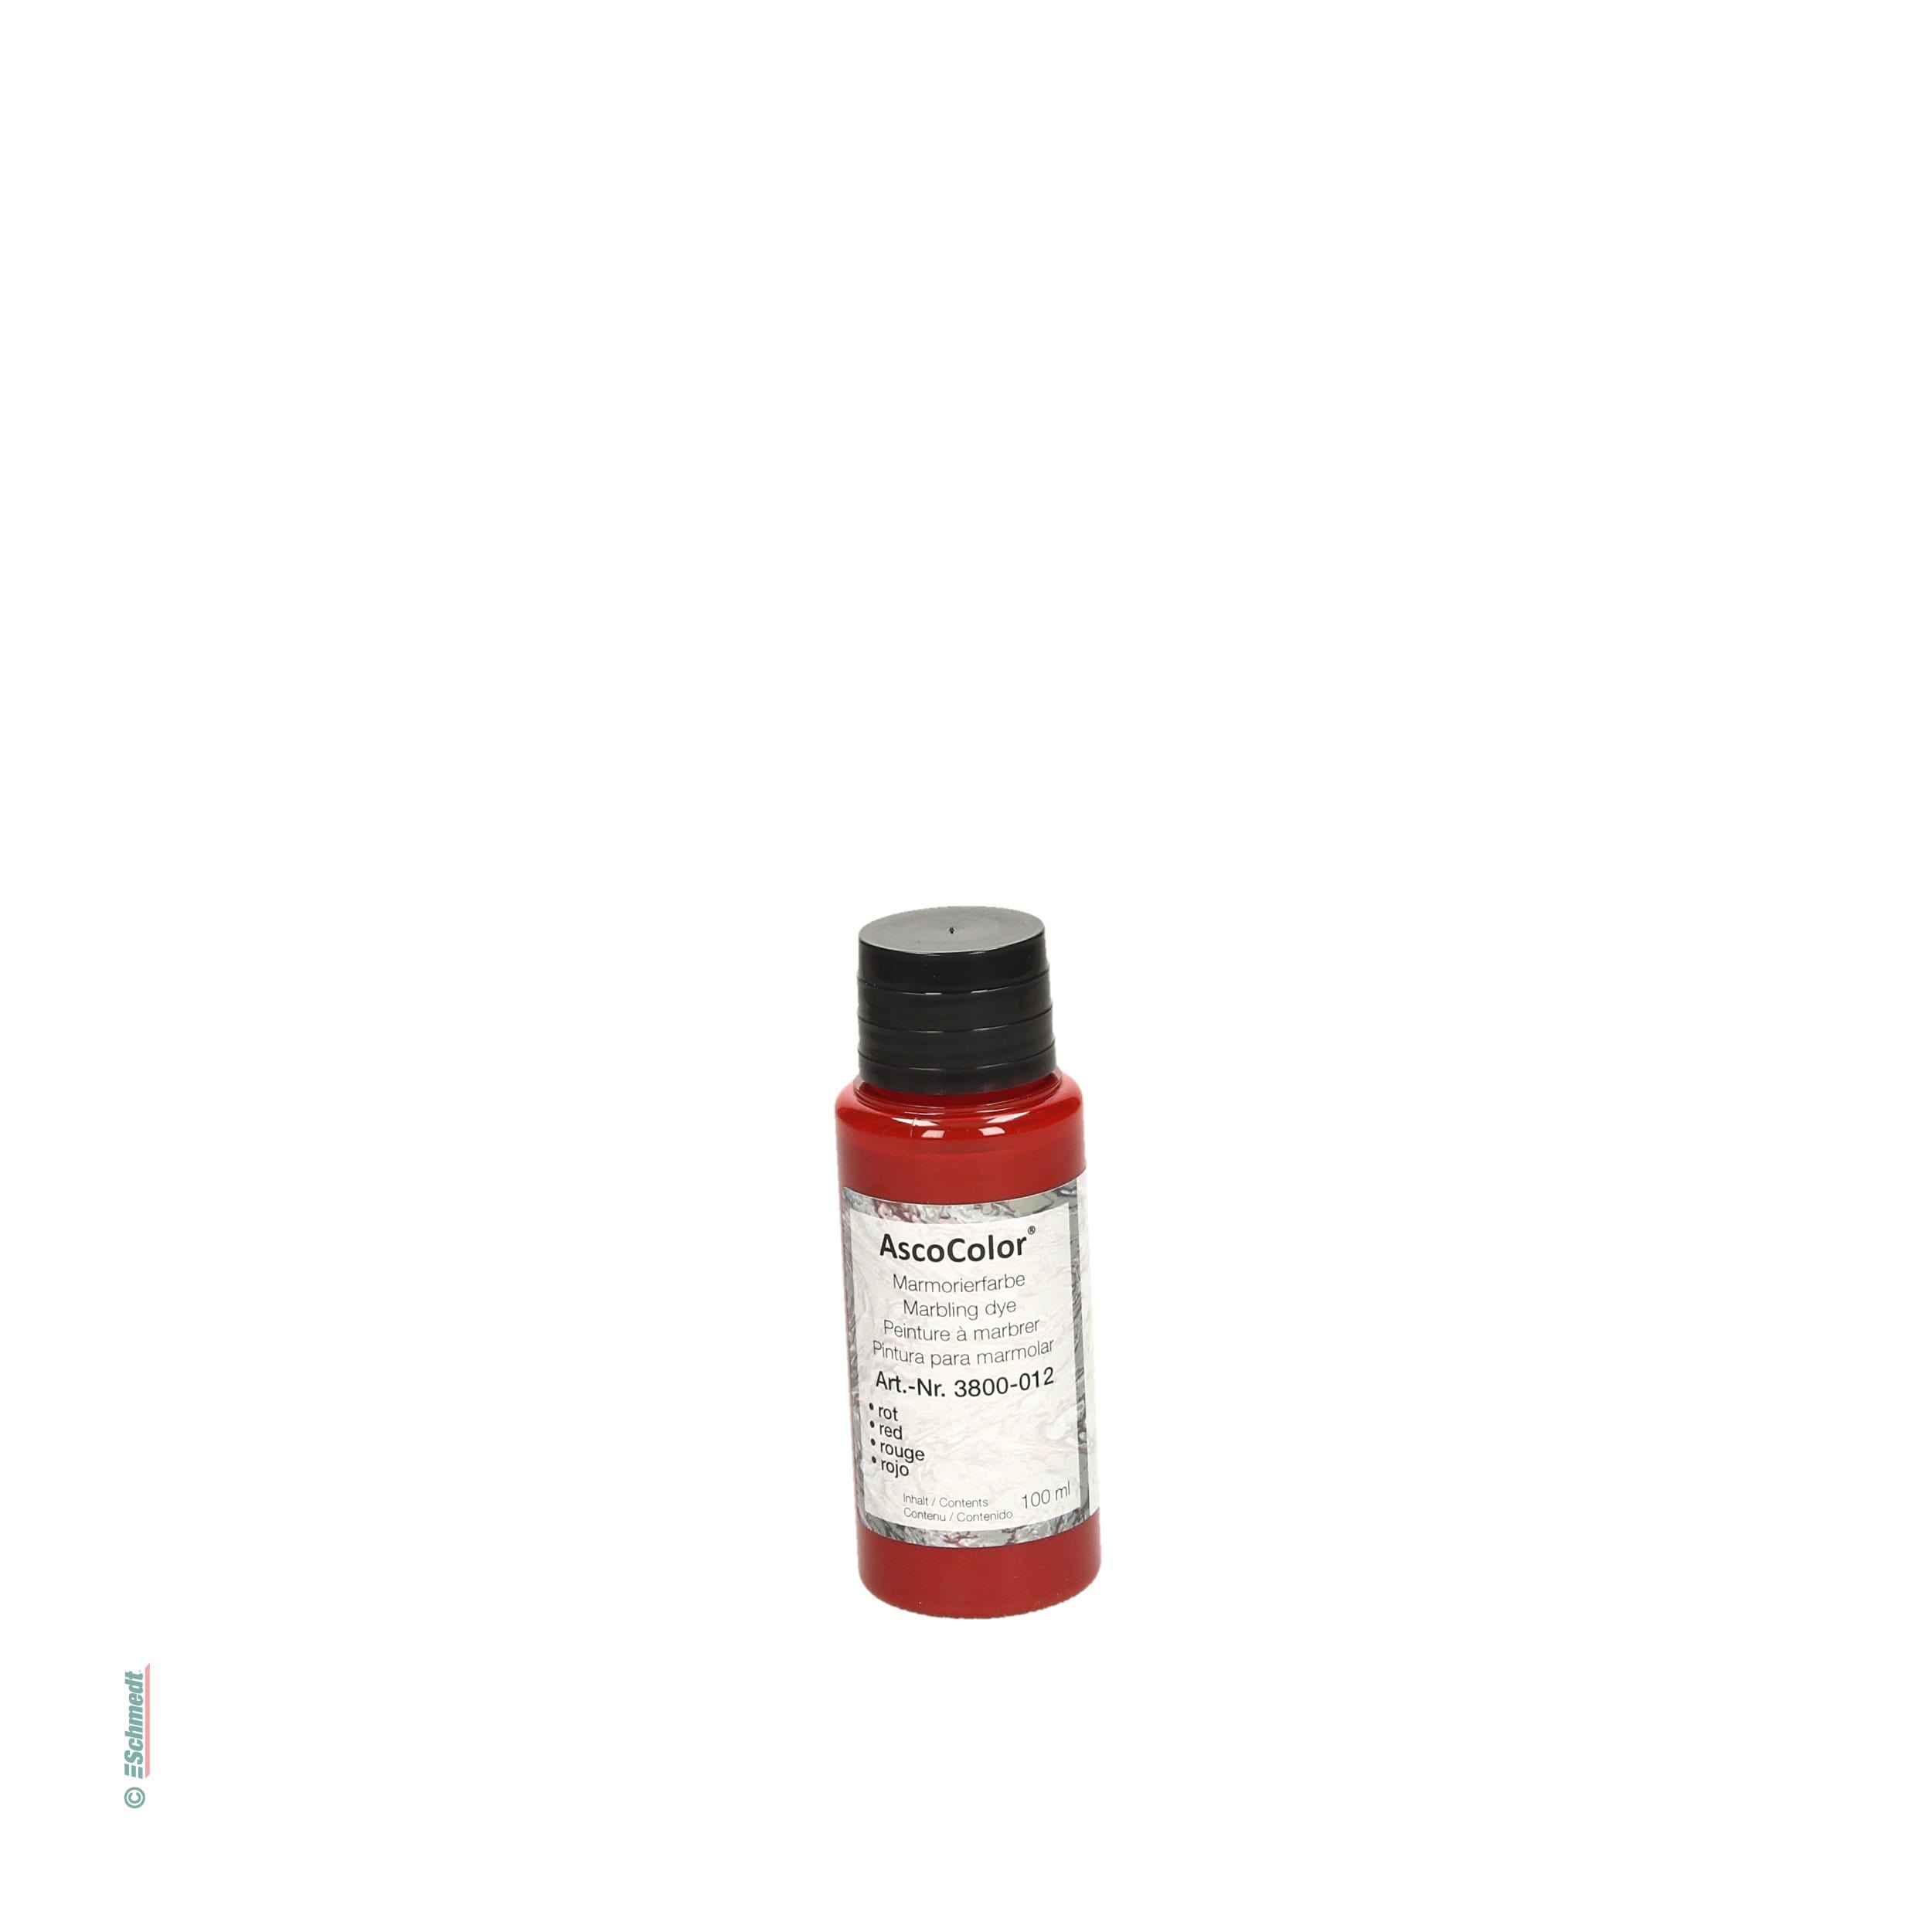 AscoColor® Marmorierfarbe - Farbe rot - Gebindegröße Flasche / 100 ml - zur Herstellung marmorierter Papiere... - Bild-1